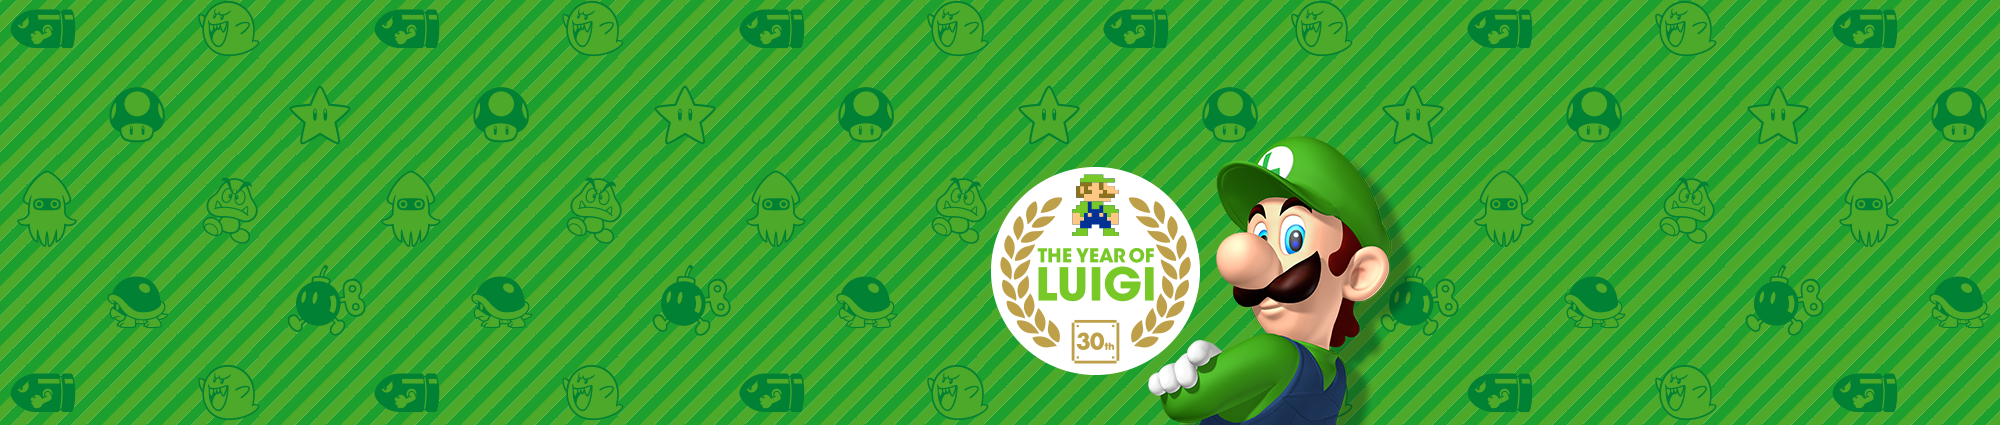 L'Anno di Luigi 